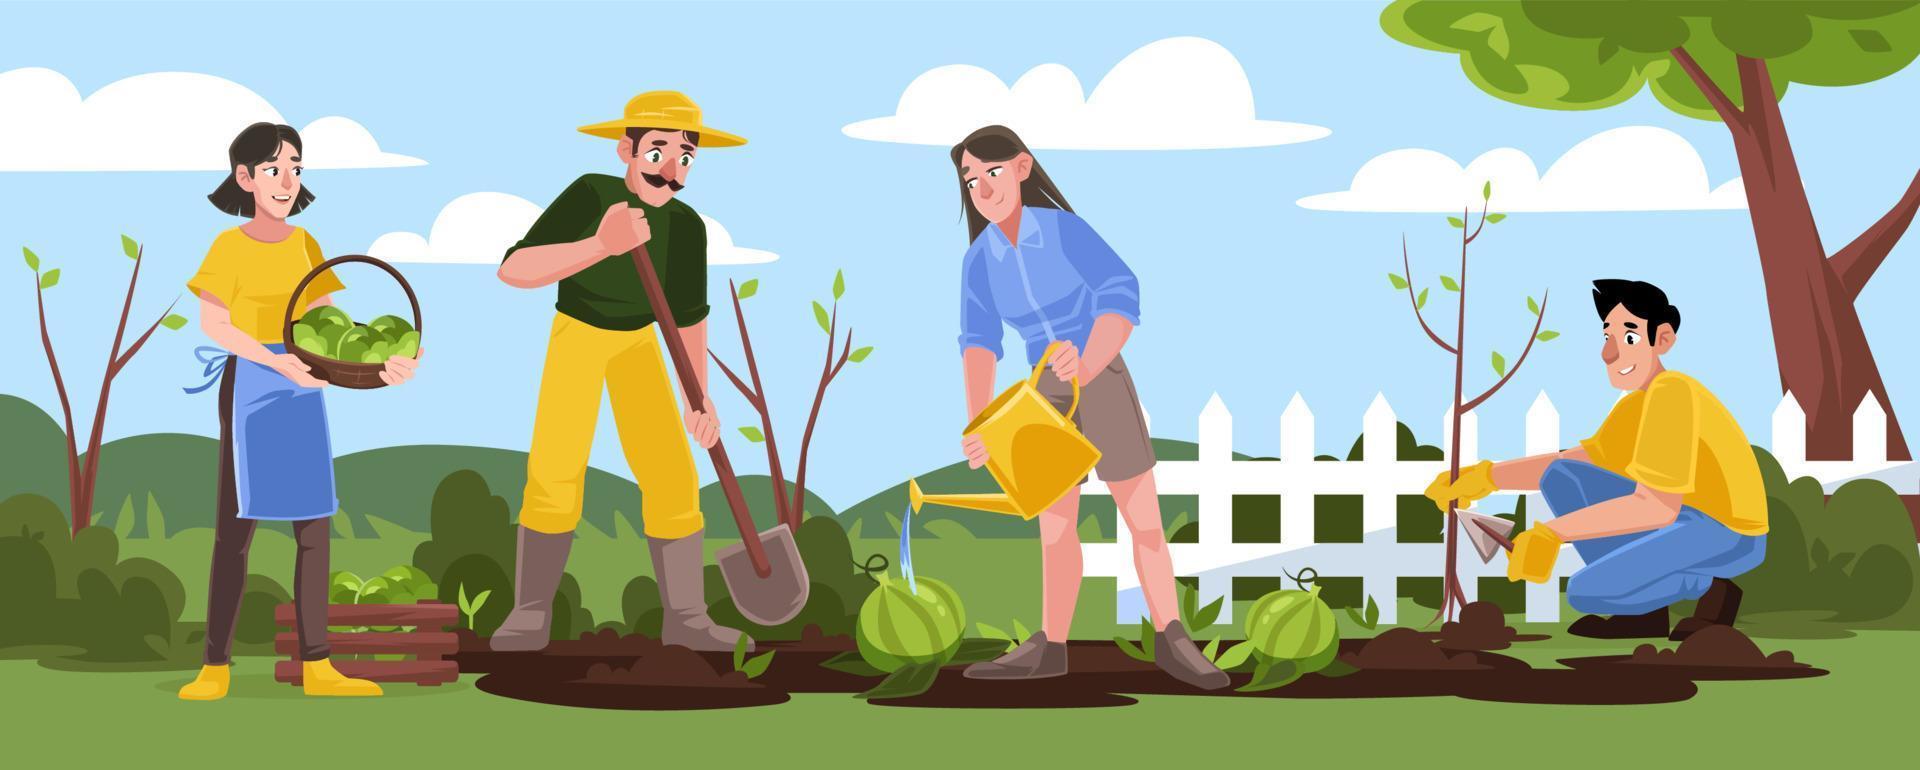 Gartenarbeit oder landwirtschaftliche Arbeiten im Garten, arbeitende Menschen vektor